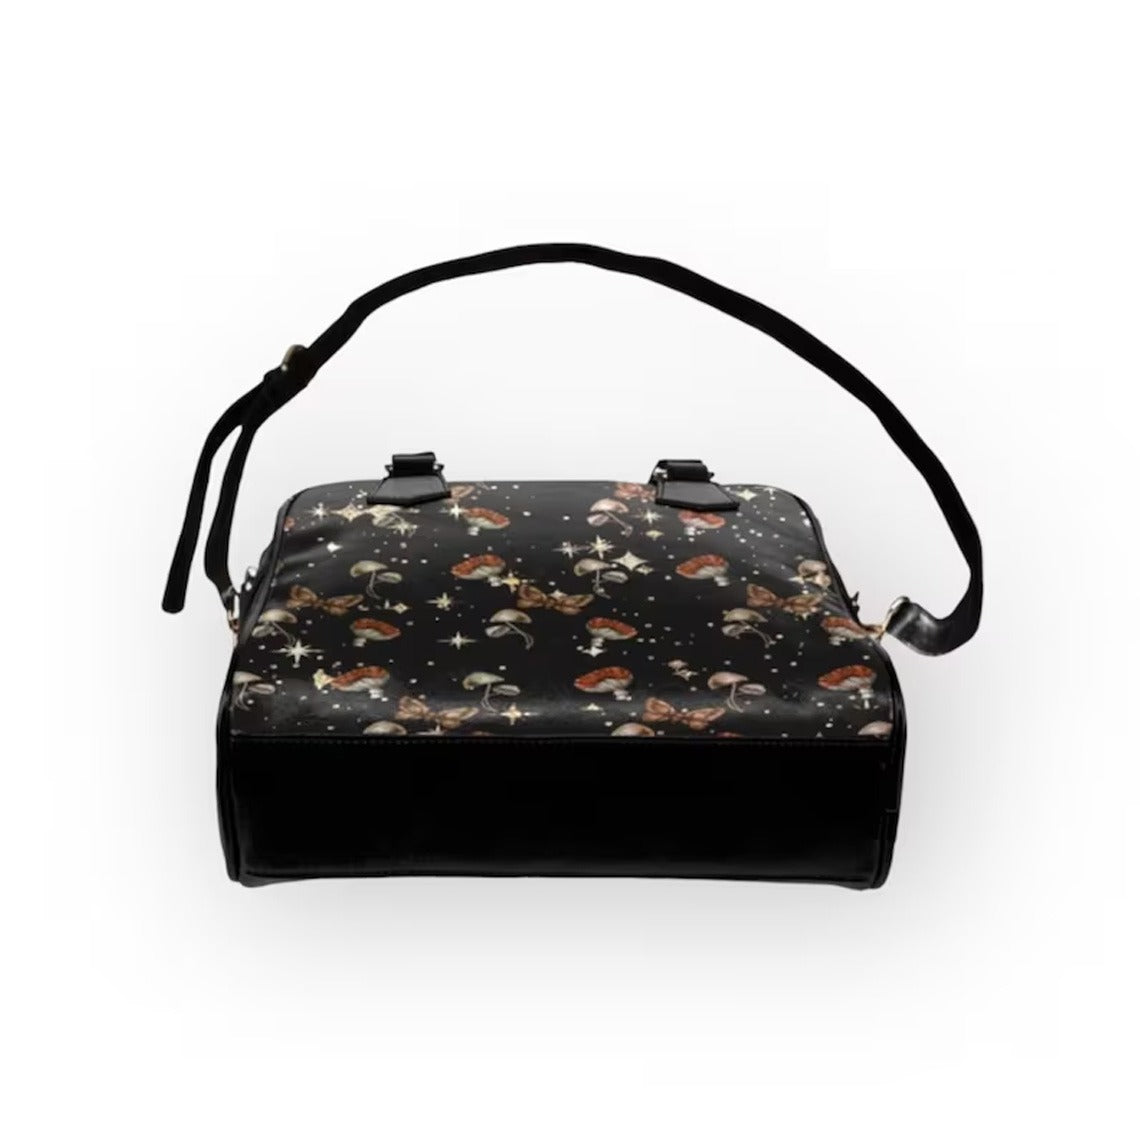 Starry Mushroom Moth Handbag